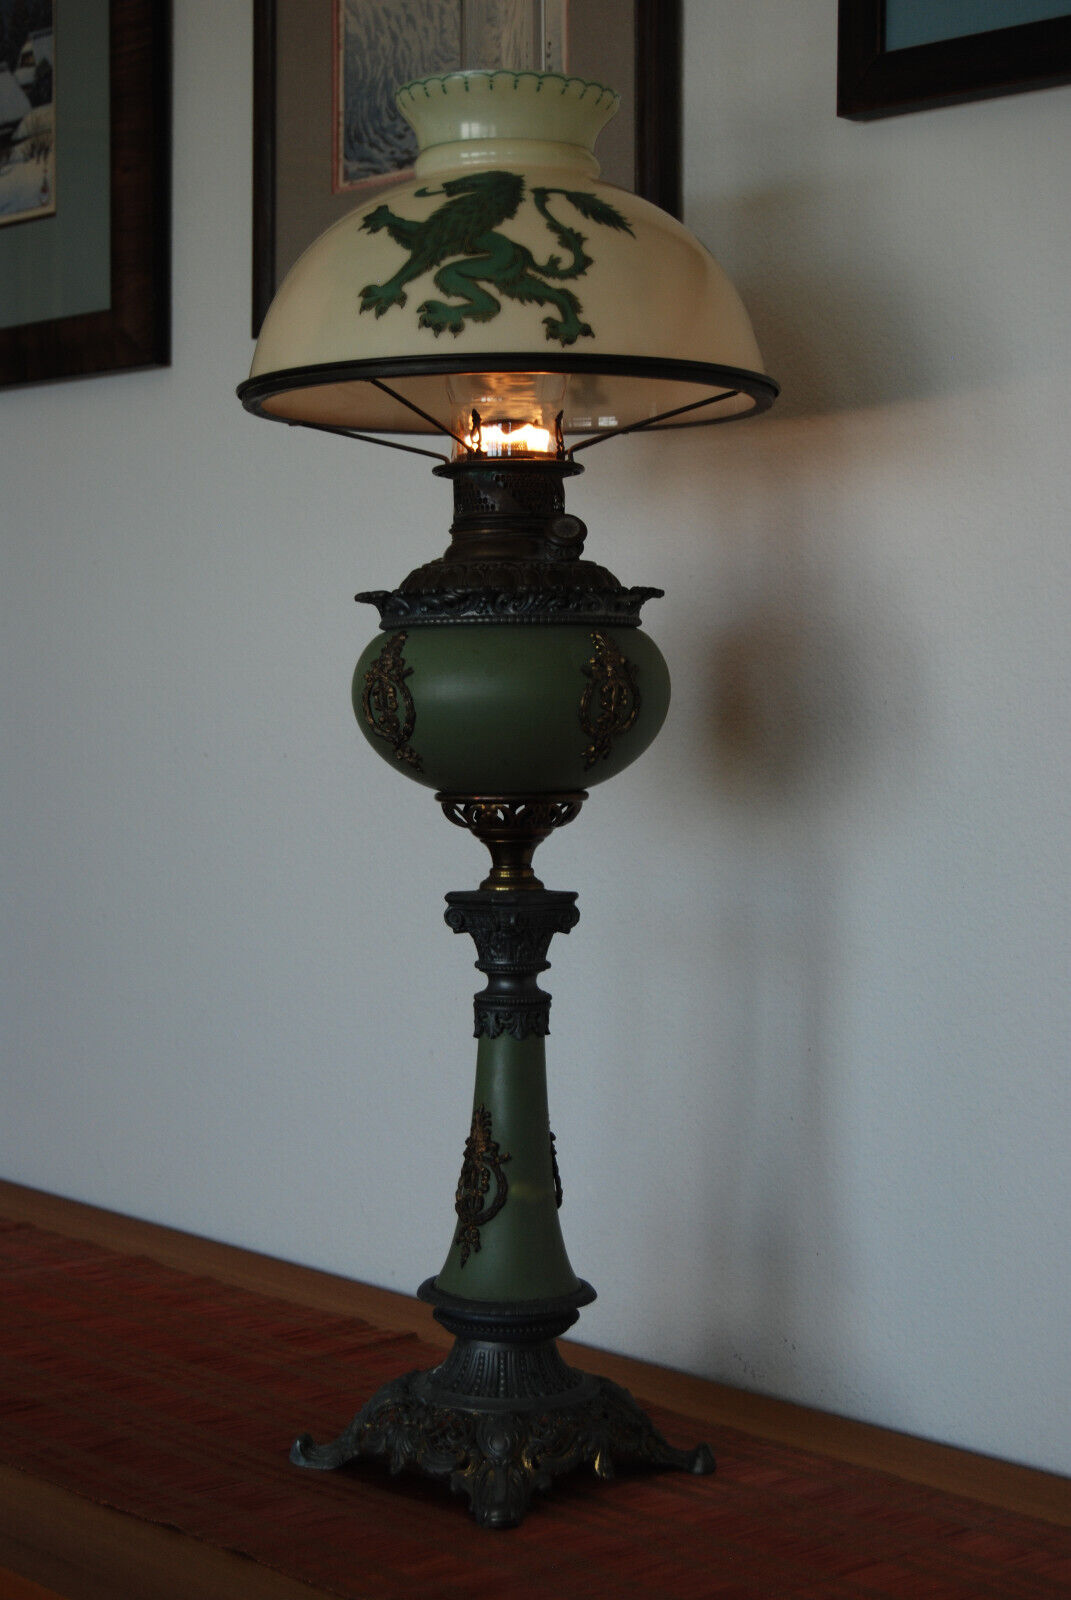 ANTIQUE ART NOUVEAU GWTW VICTORIAN LION PAIRPOINT KEROSENE LAMP